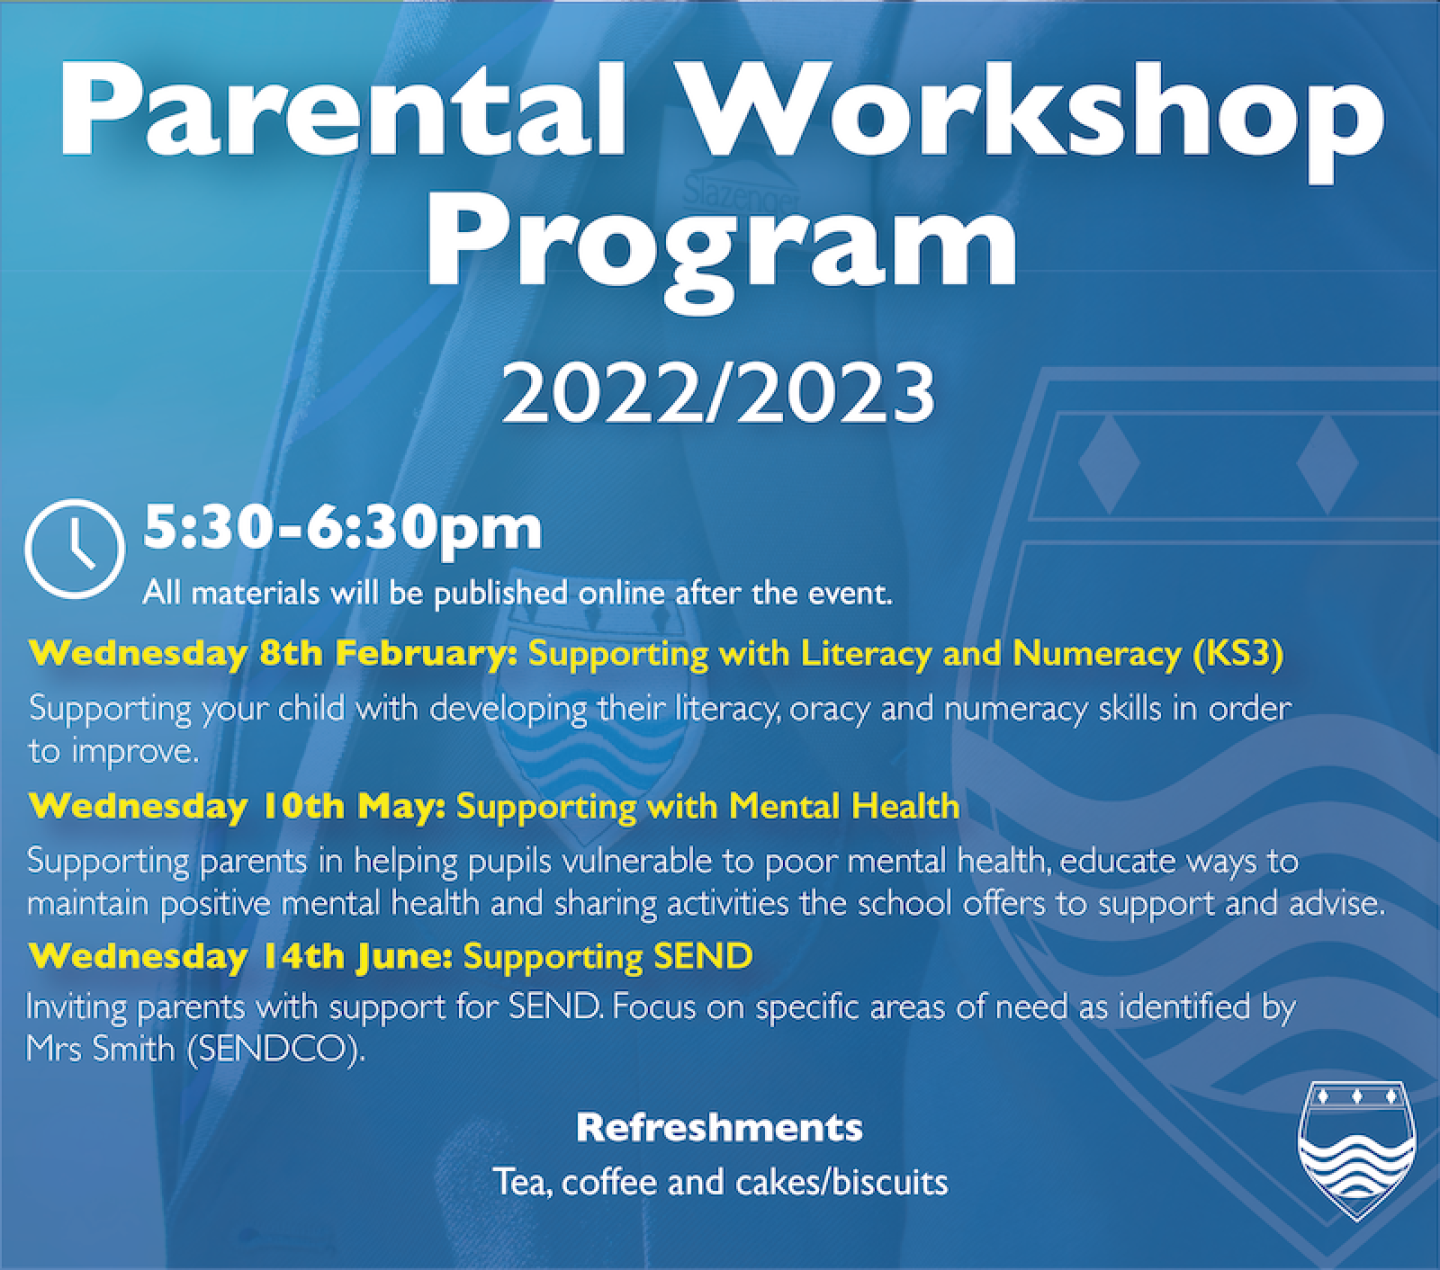 parental-workshop-program-01-1